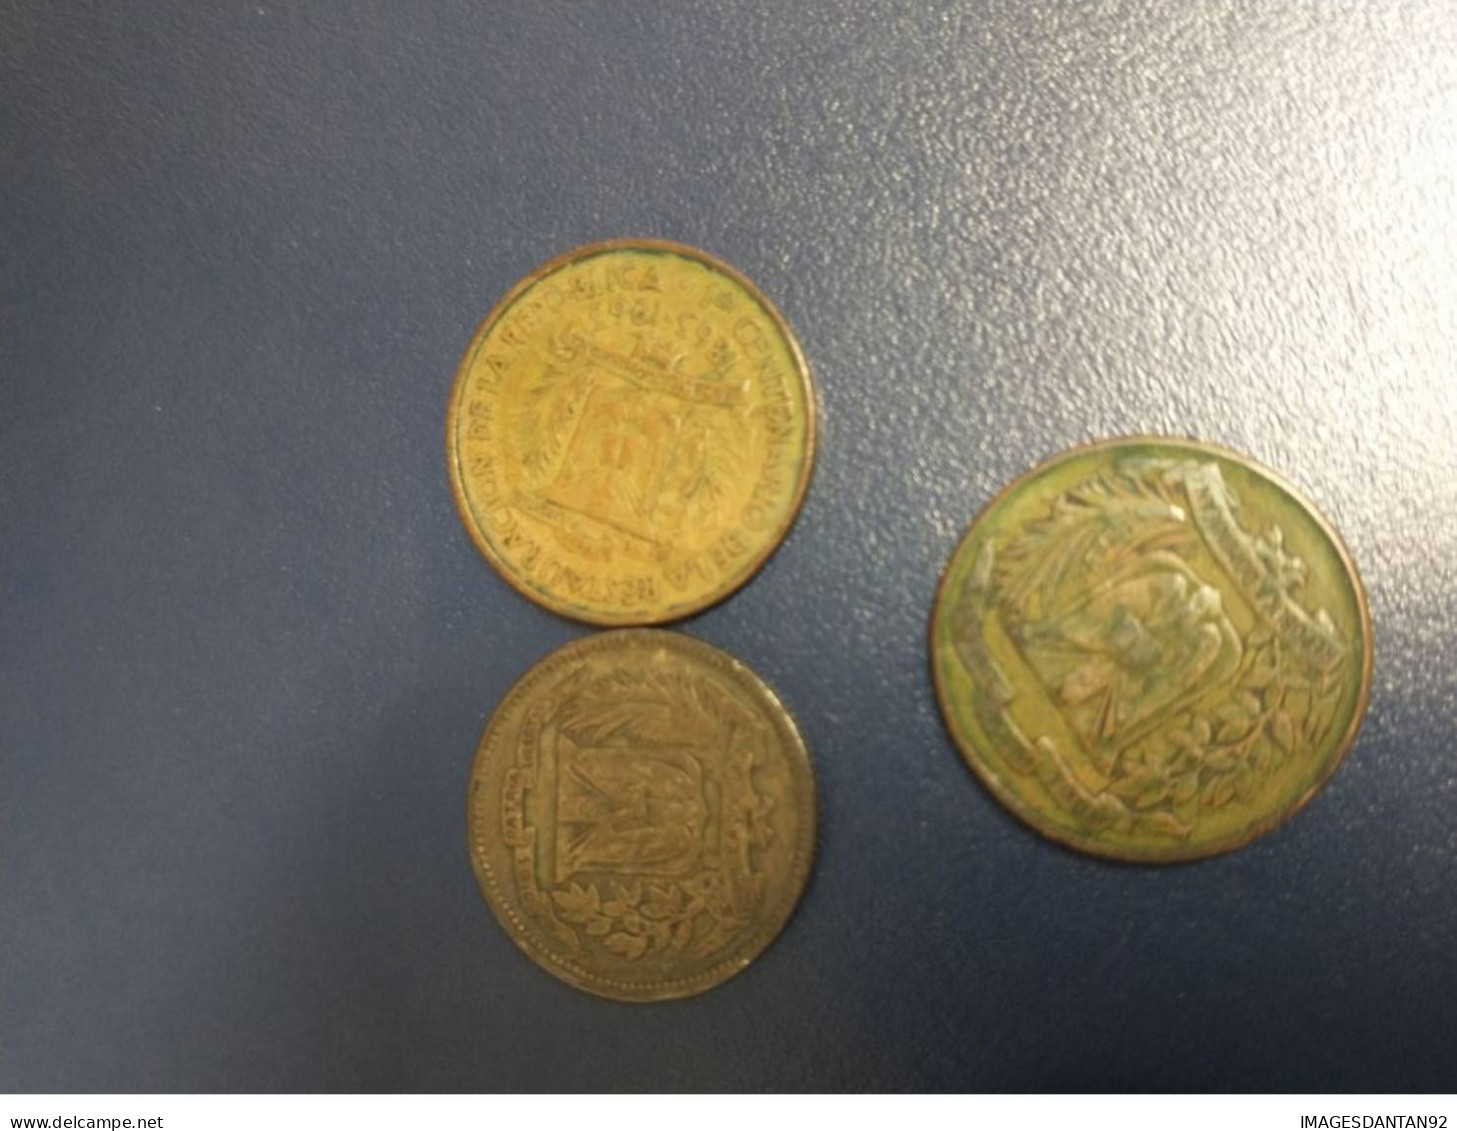 REPUBLIQUE DOMINICAINE DOMINICANA LOT SET DE 5 PIECES COINS 1942 / 1960 / 1960 / 1961 / 1959 - Dominicaine